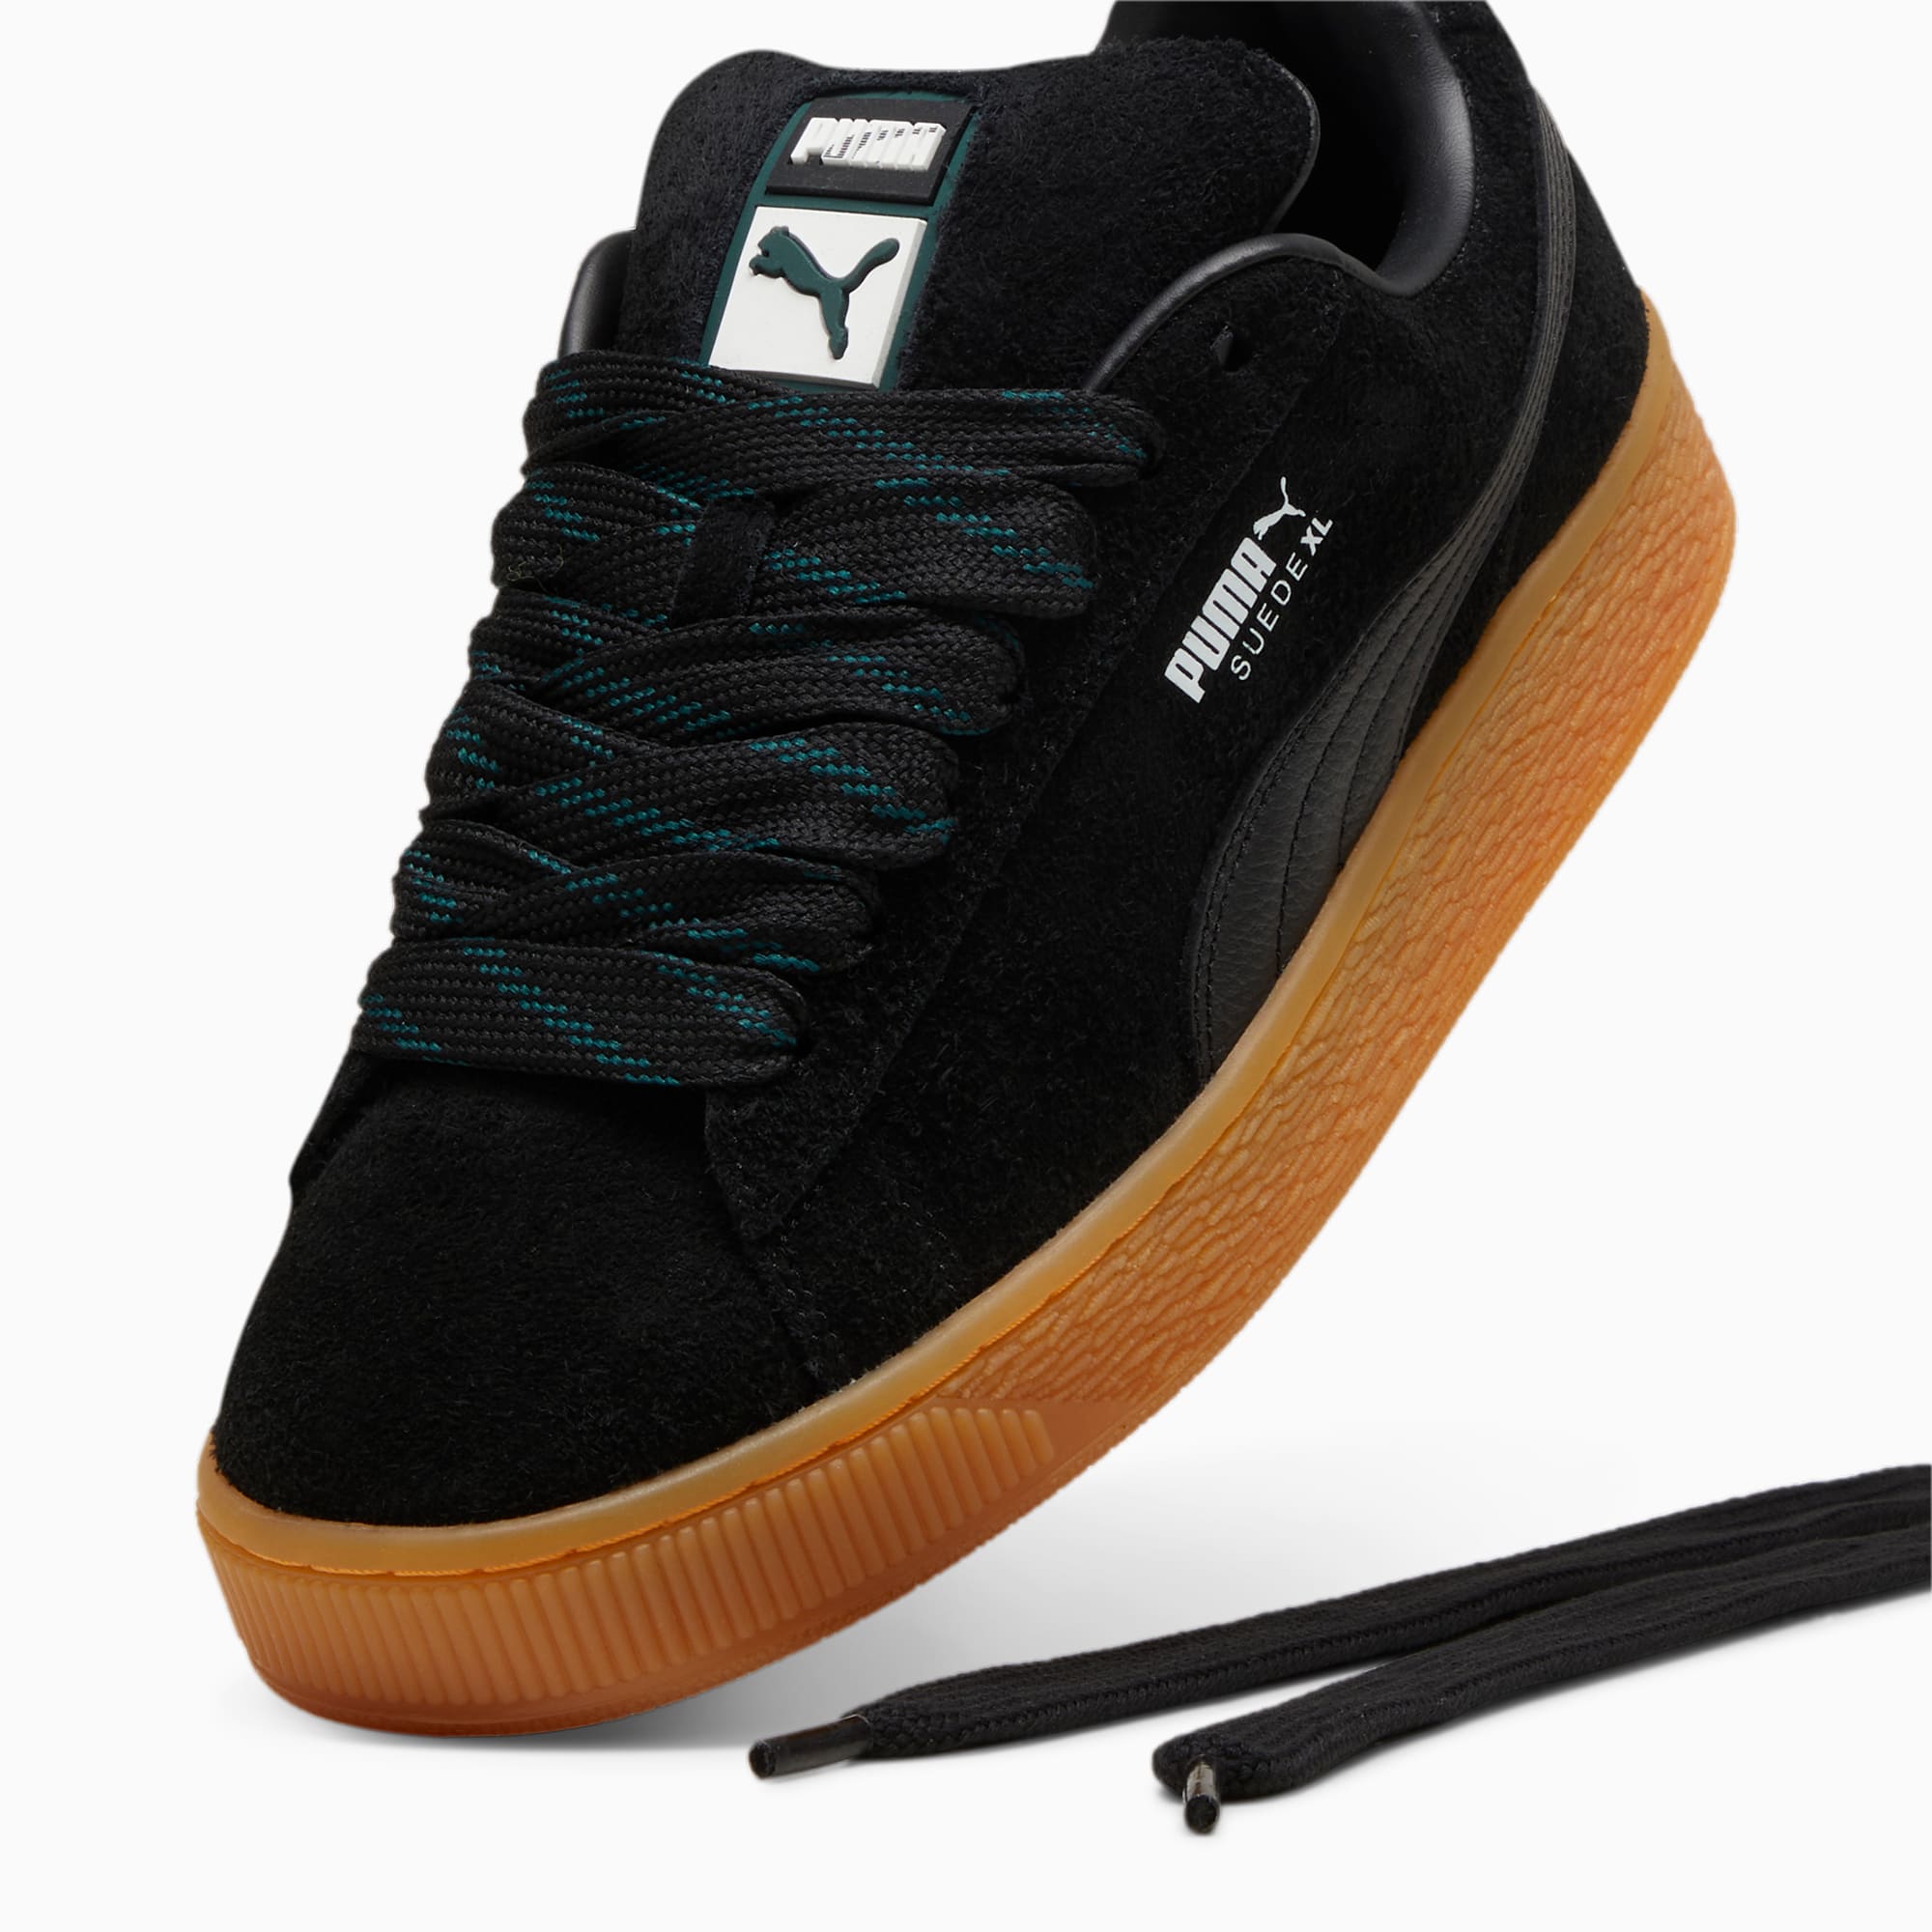 PUMA Suede XL Flecked Sneakers Unisex Schuhe, Schwarz/Grün, Größe: 39, Schuhe